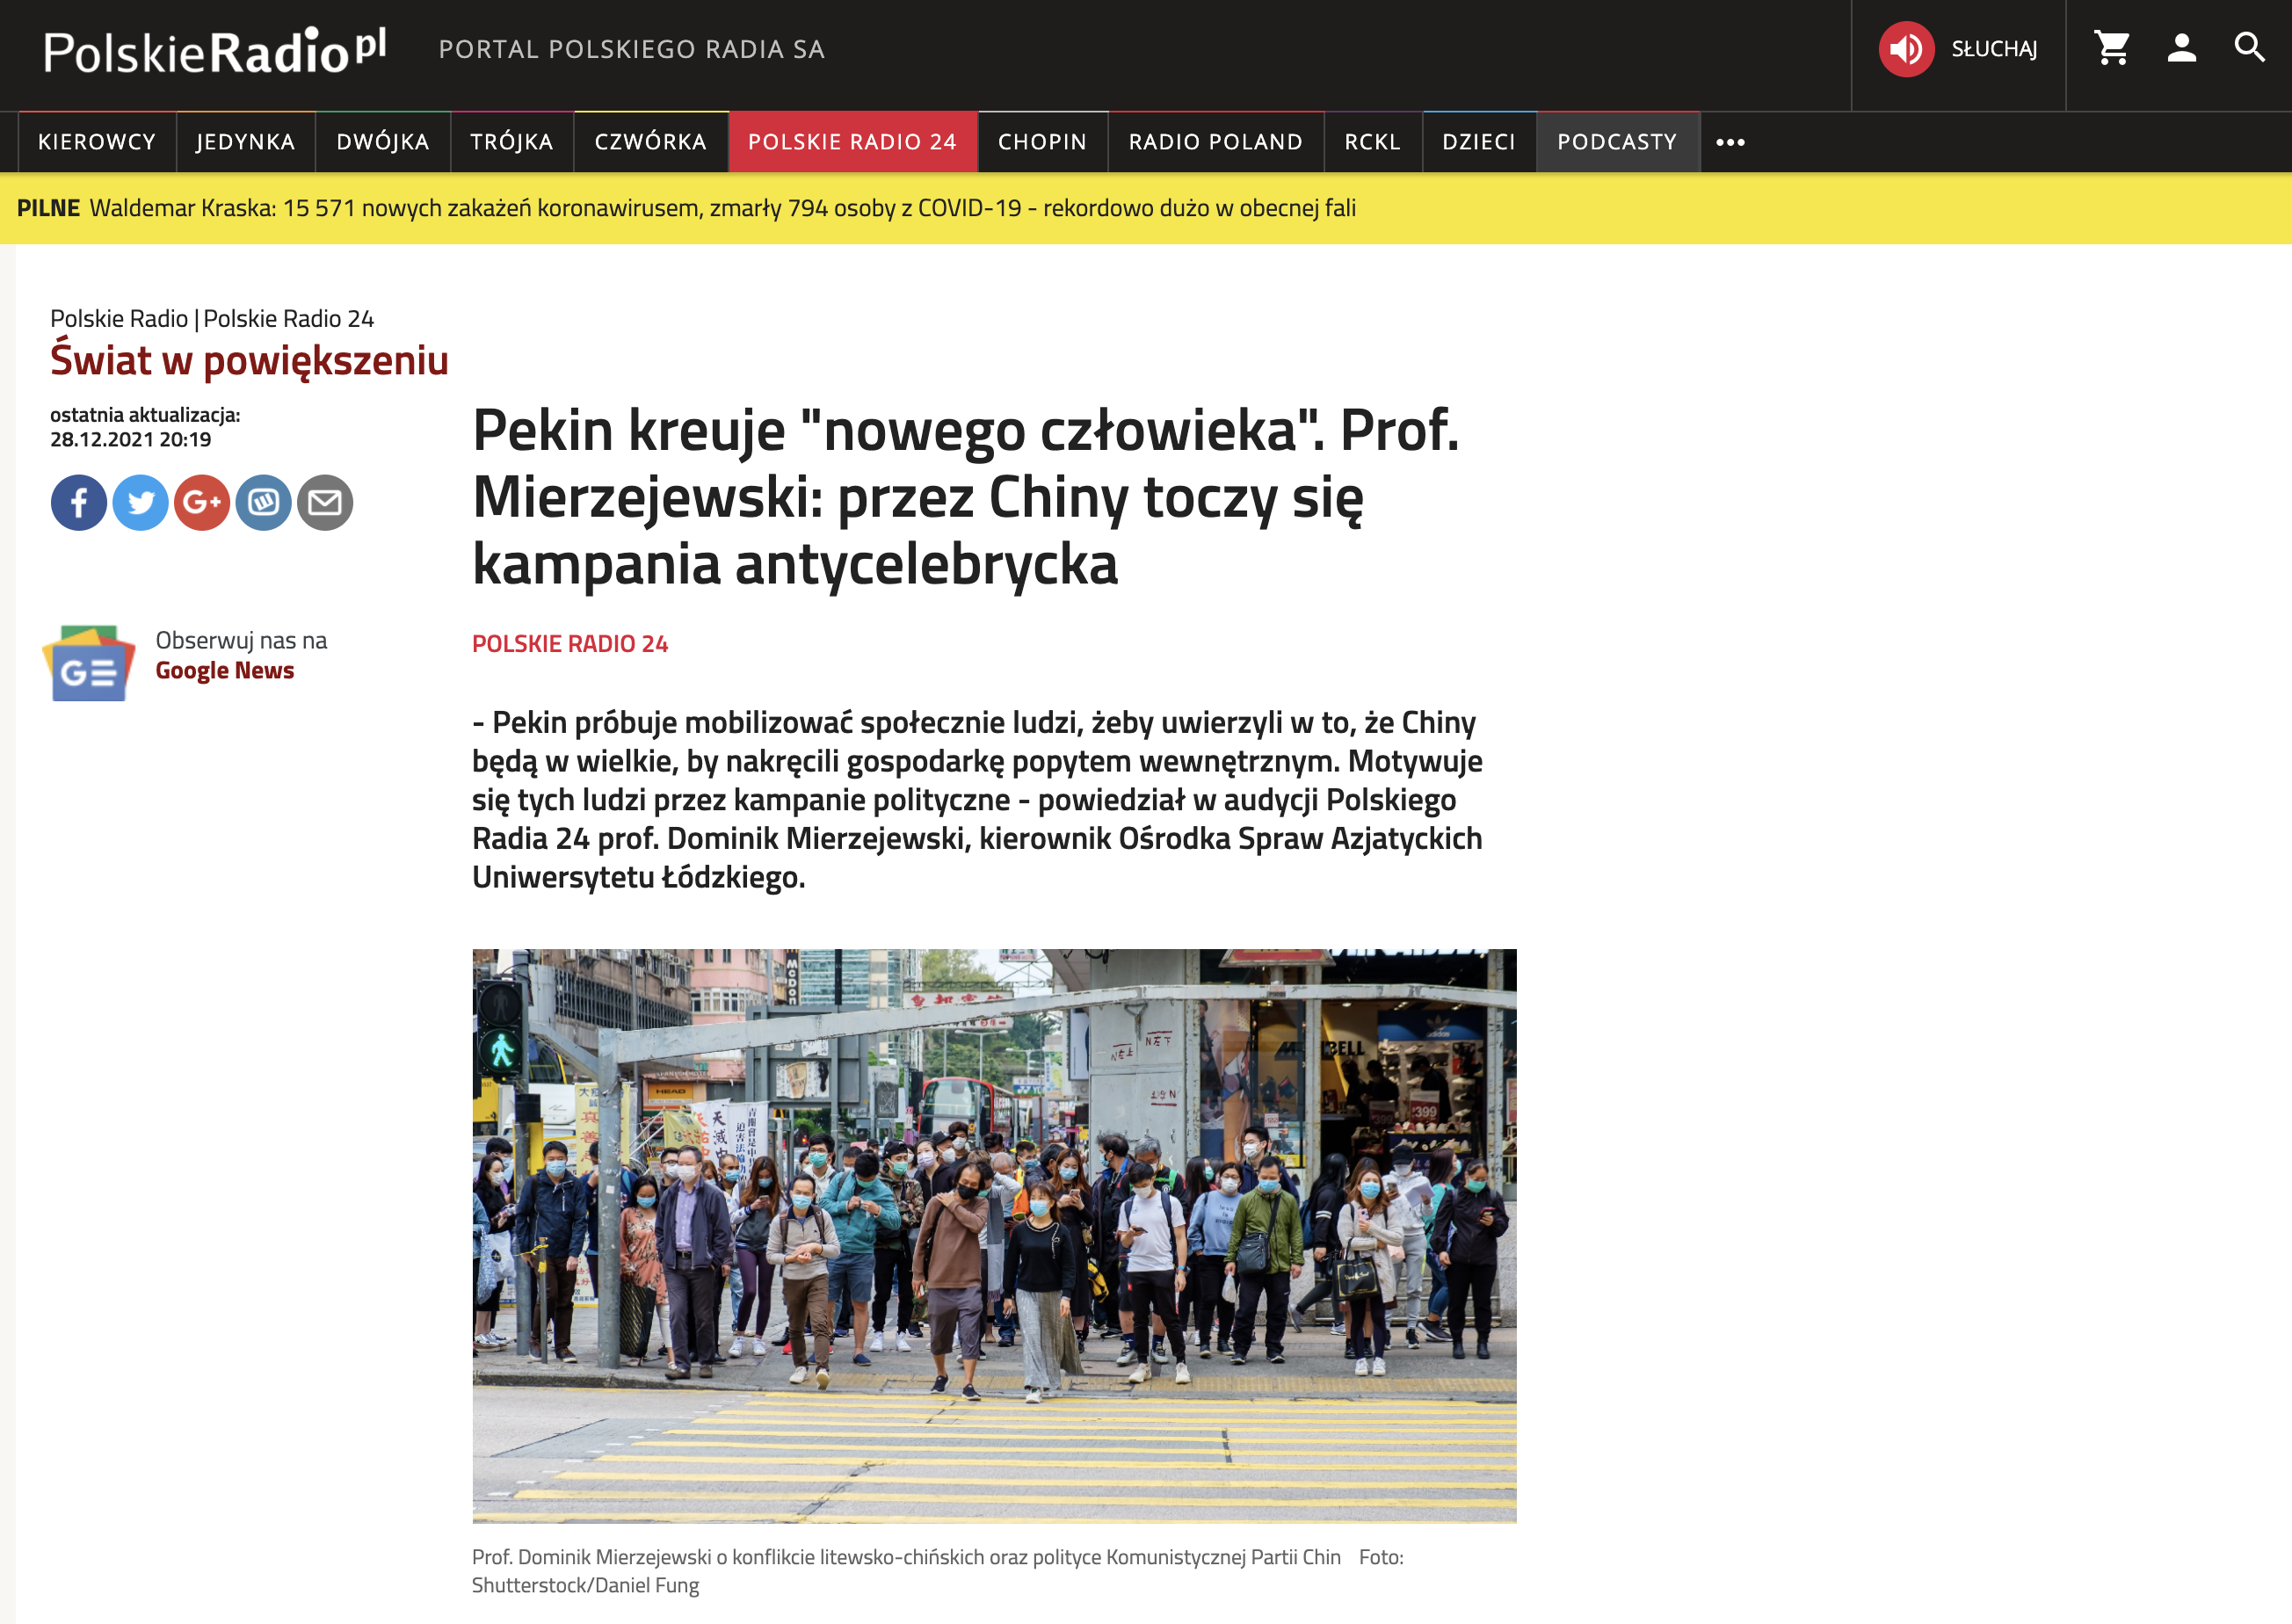 Zrzut ekranu strony internetowej Polskiego Radia/Screenshot of the Polskie Radio website